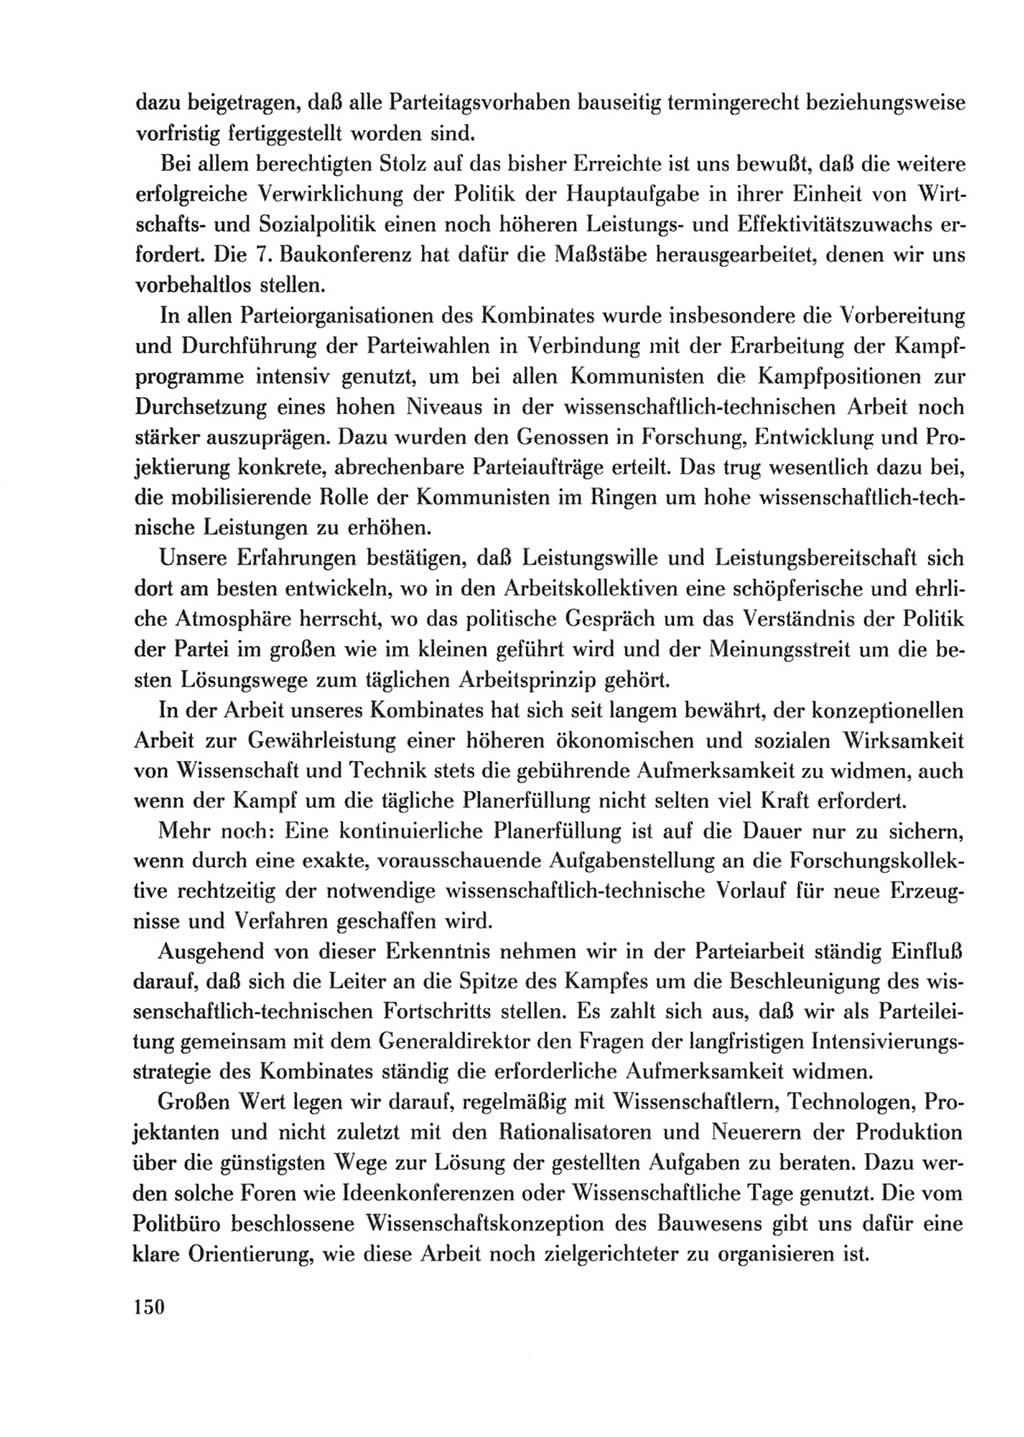 Protokoll der Verhandlungen des Ⅹ. Parteitages der Sozialistischen Einheitspartei Deutschlands (SED) [Deutsche Demokratische Republik (DDR)] 1981, Band 2, Seite 150 (Prot. Verh. Ⅹ. PT SED DDR 1981, Bd. 2, S. 150)